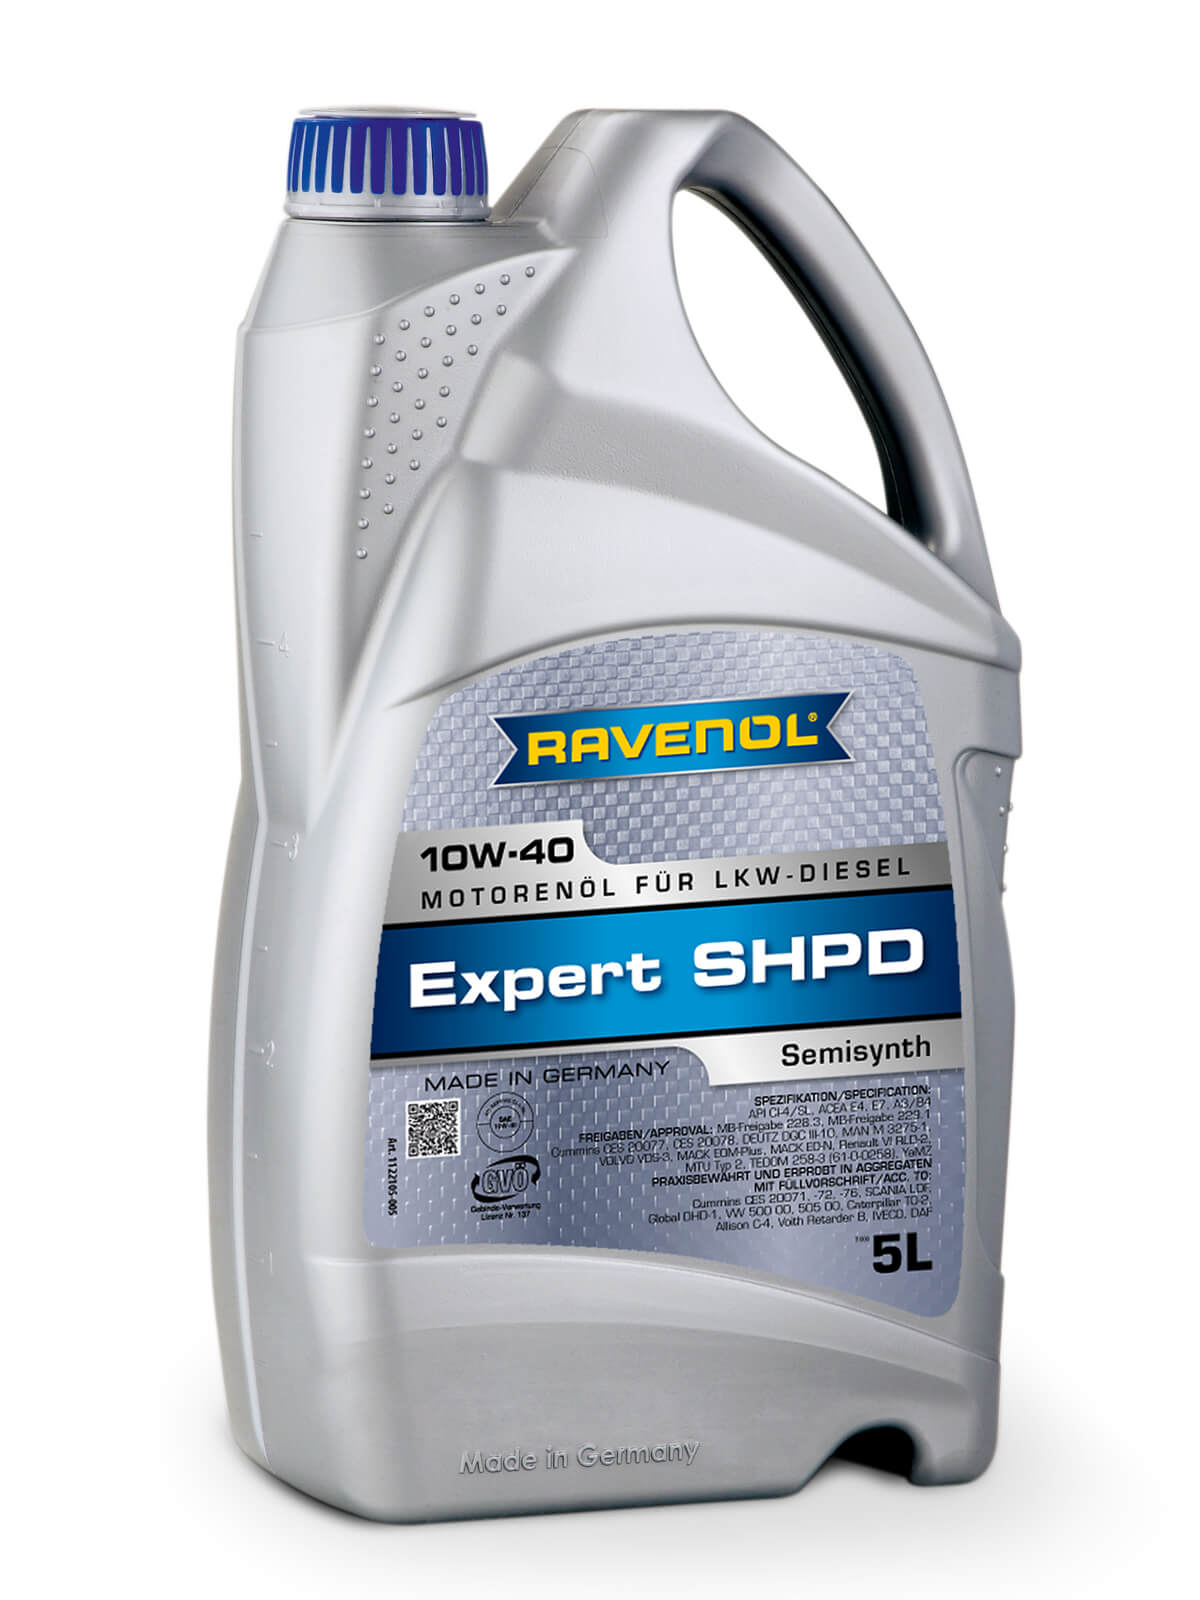 Motoröl Ravenol Expert SHPD 10W-40 direkt im Ravenol Shop kaufen